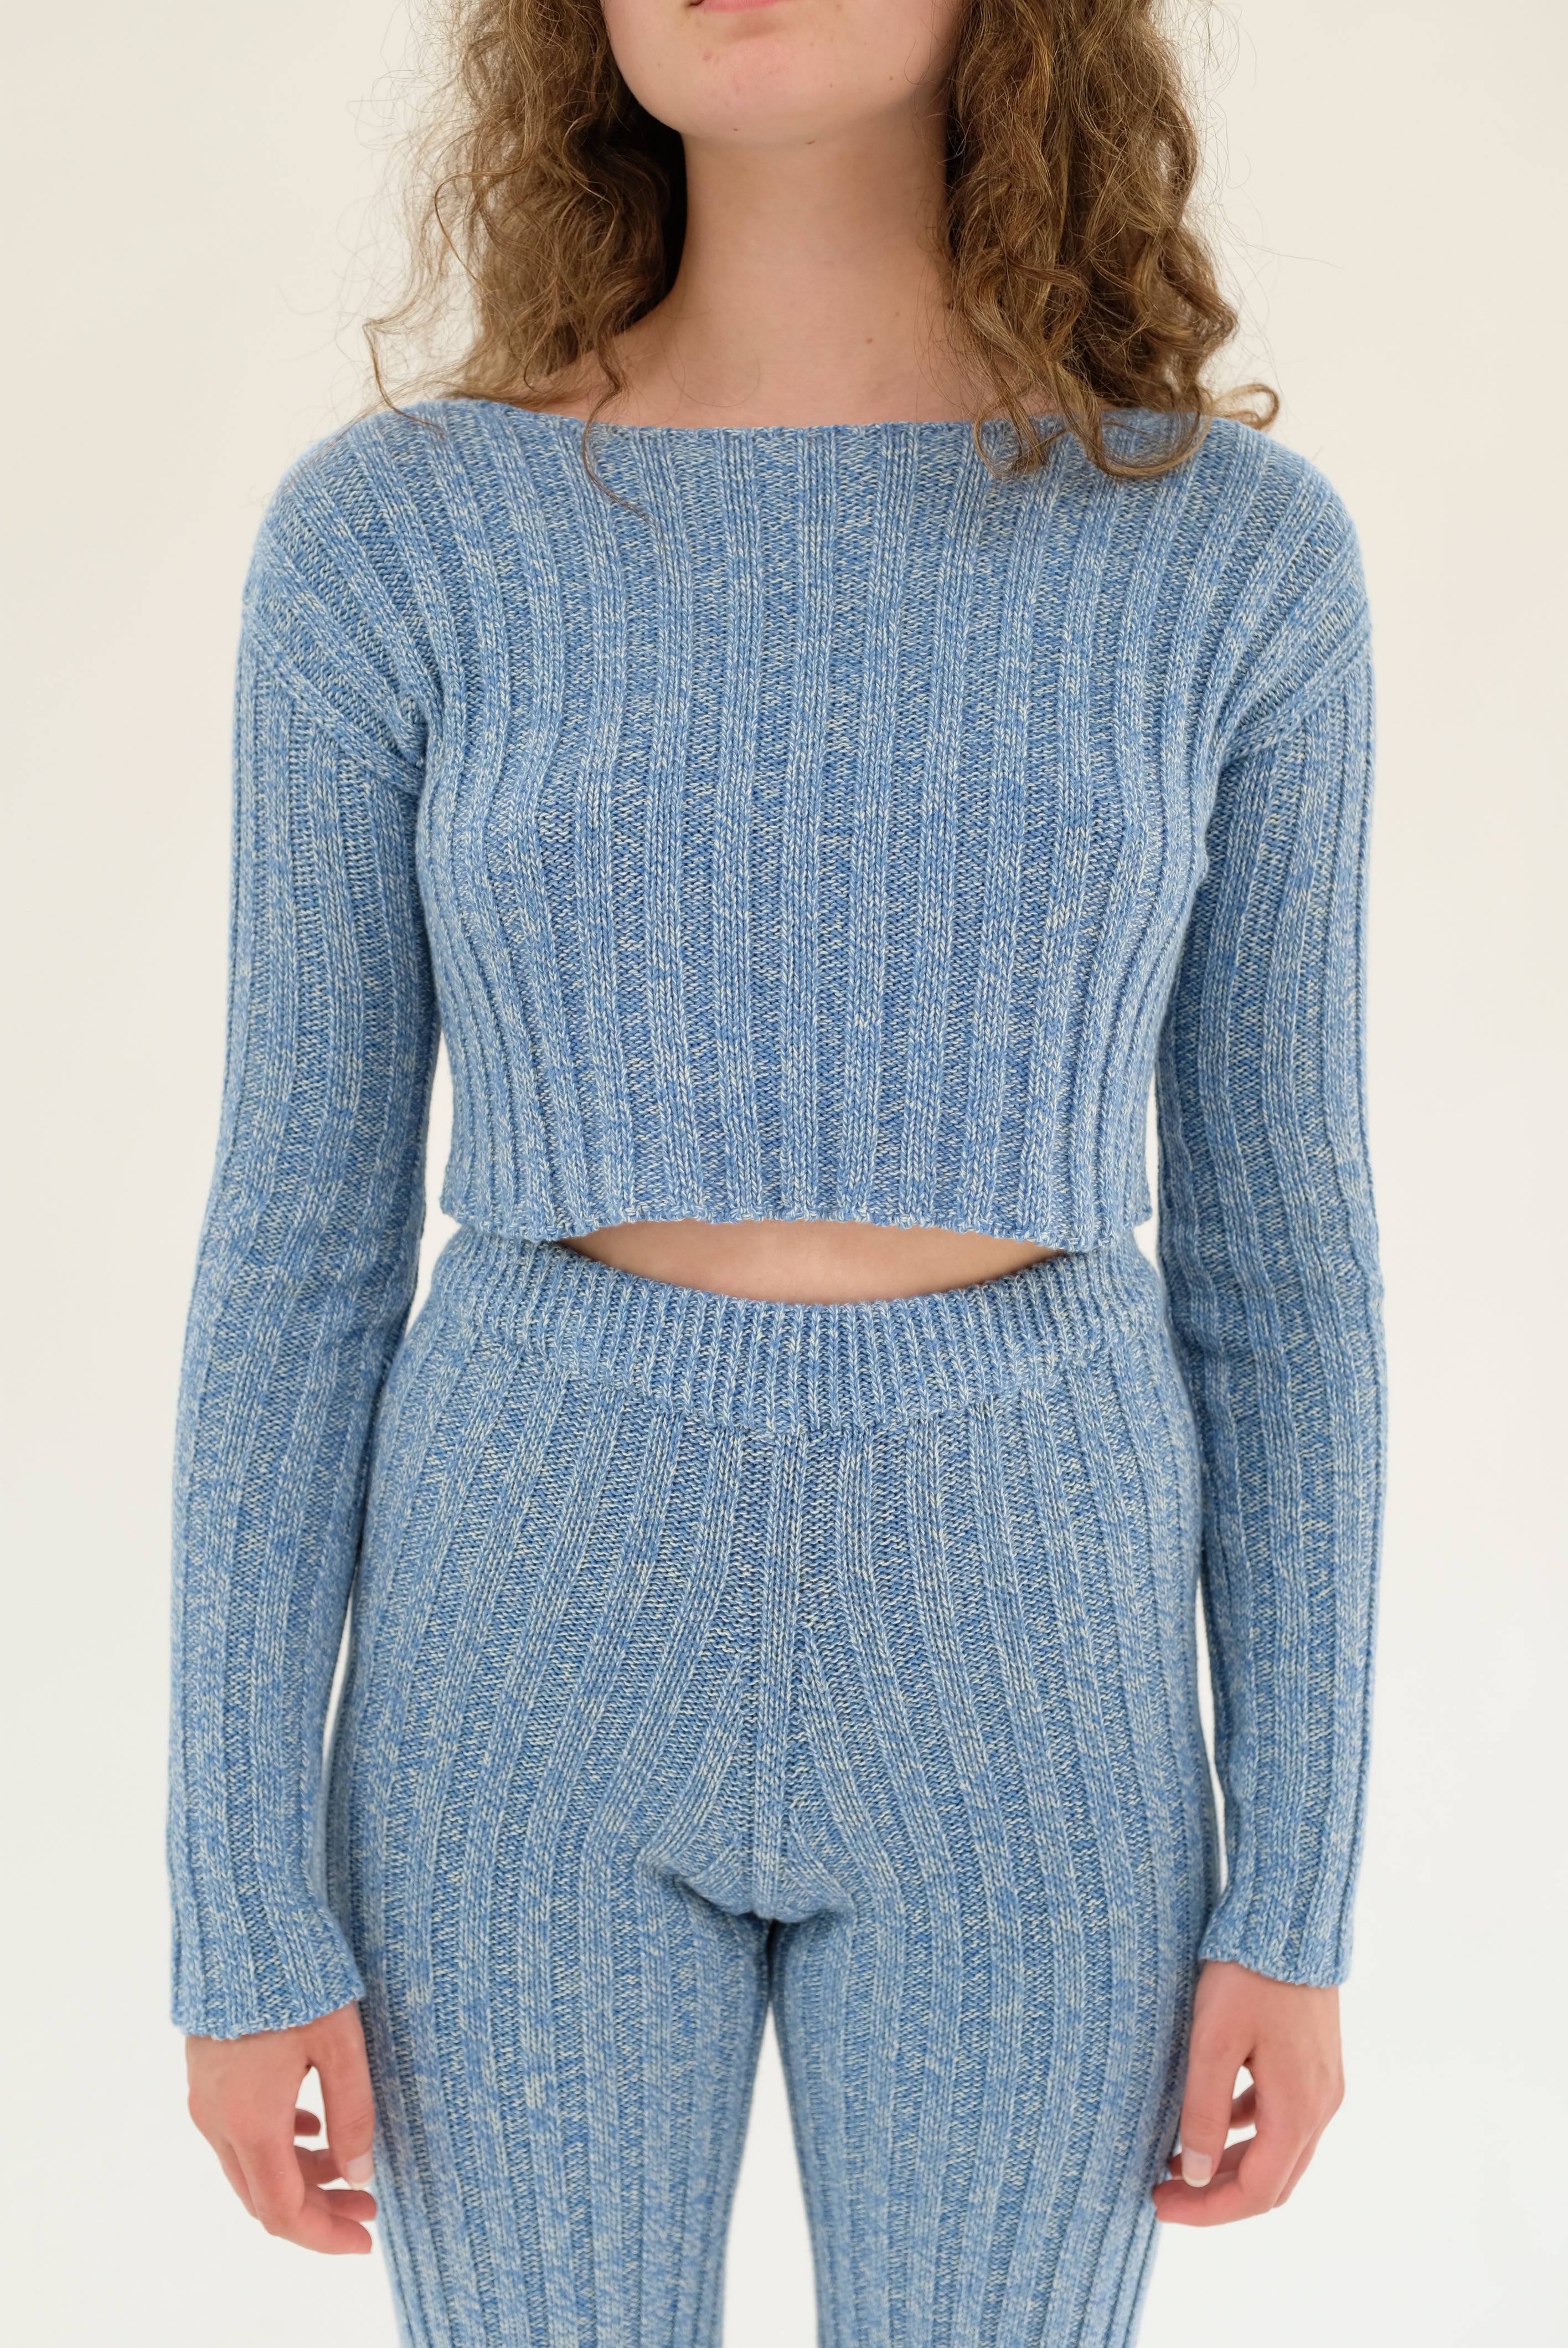 Baserange Macau Sweater Blue Melange – Beklina